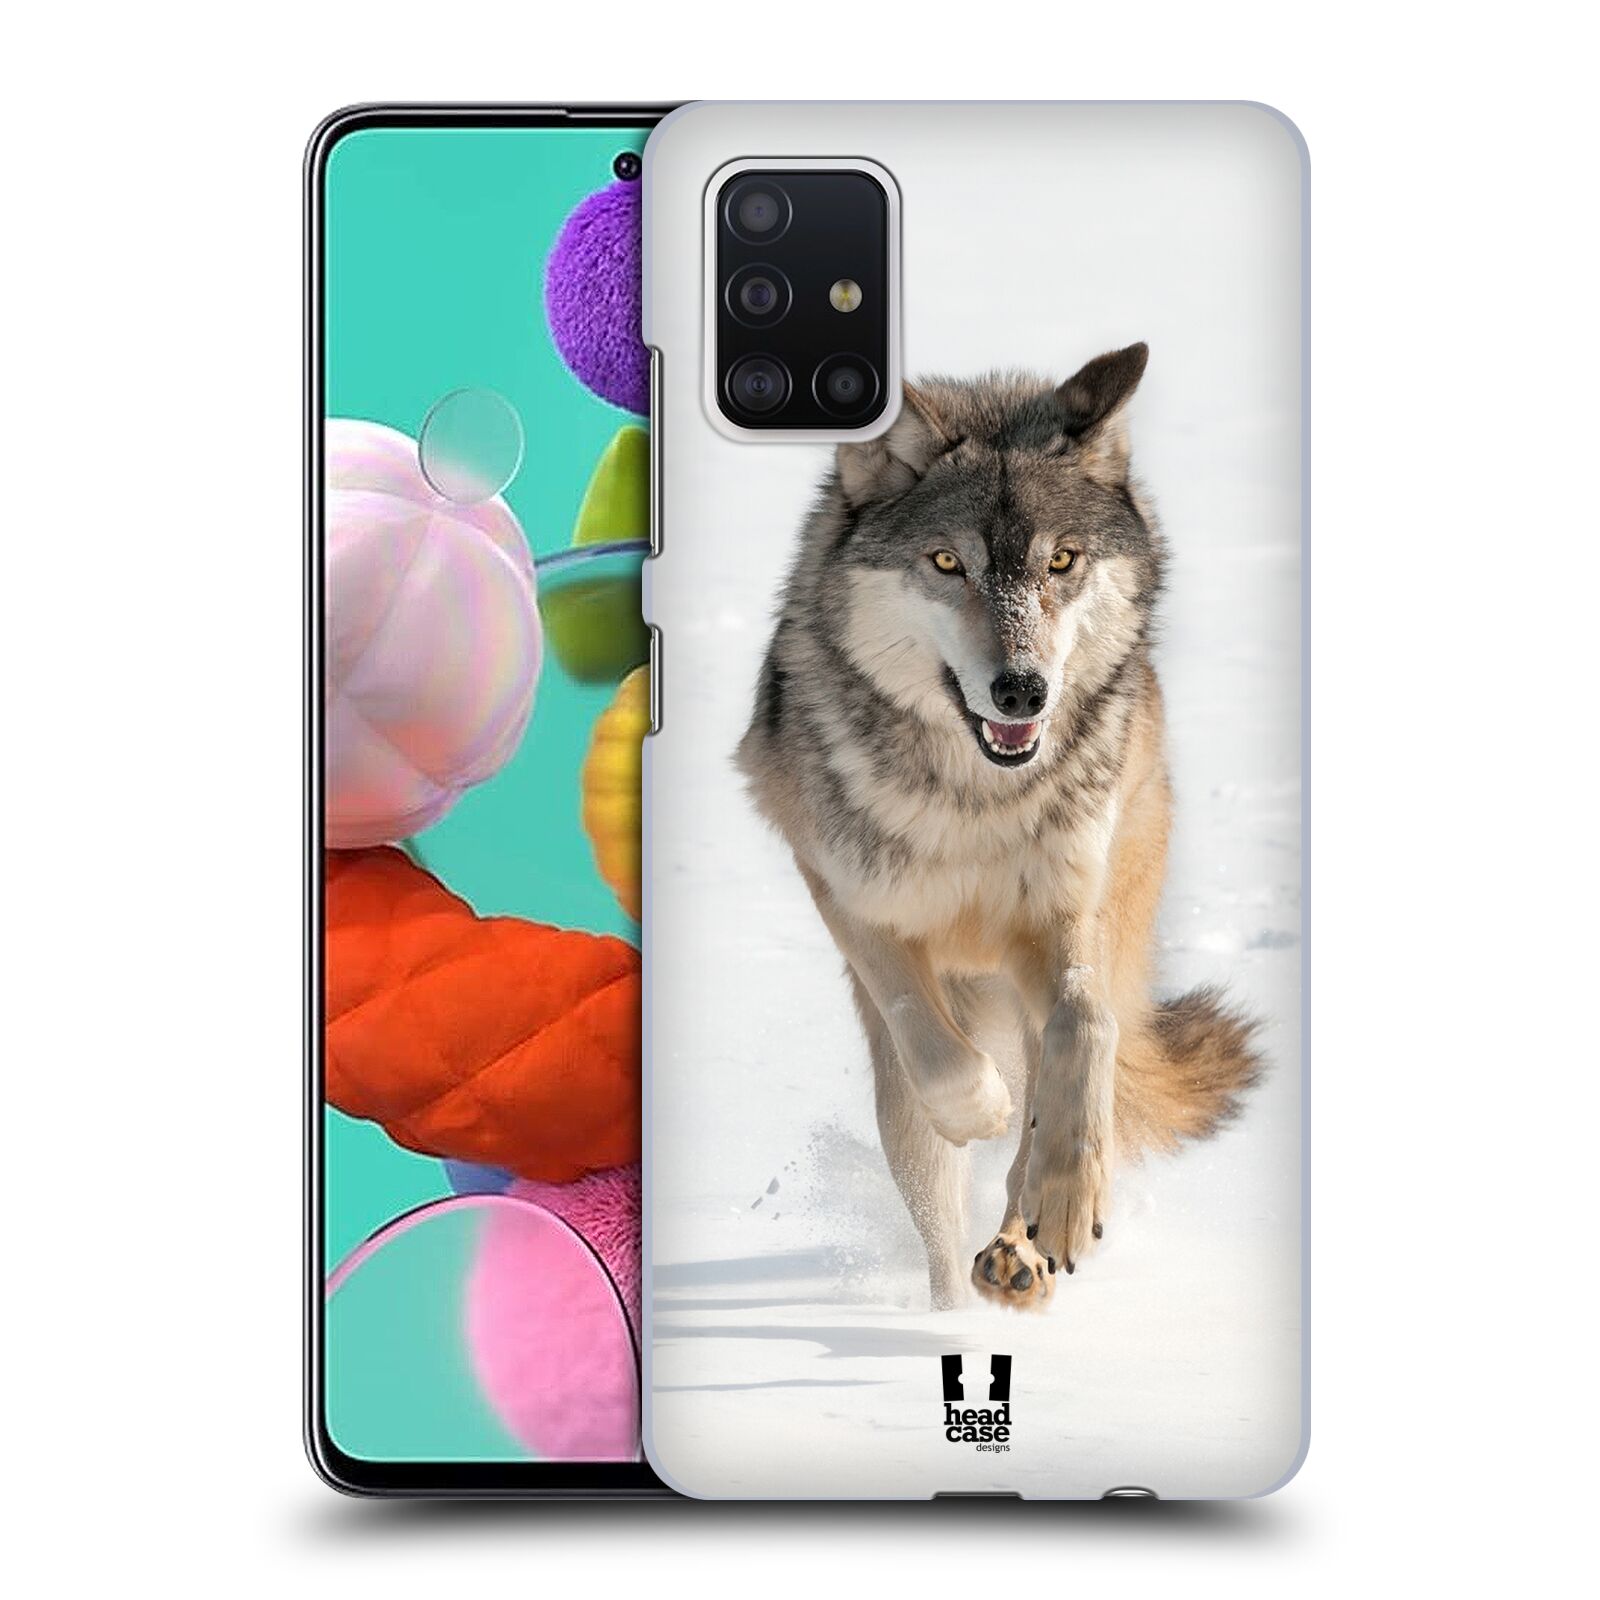 Zadní obal pro mobil Samsung Galaxy A51 - HEAD CASE - Svět zvířat divoký vlk